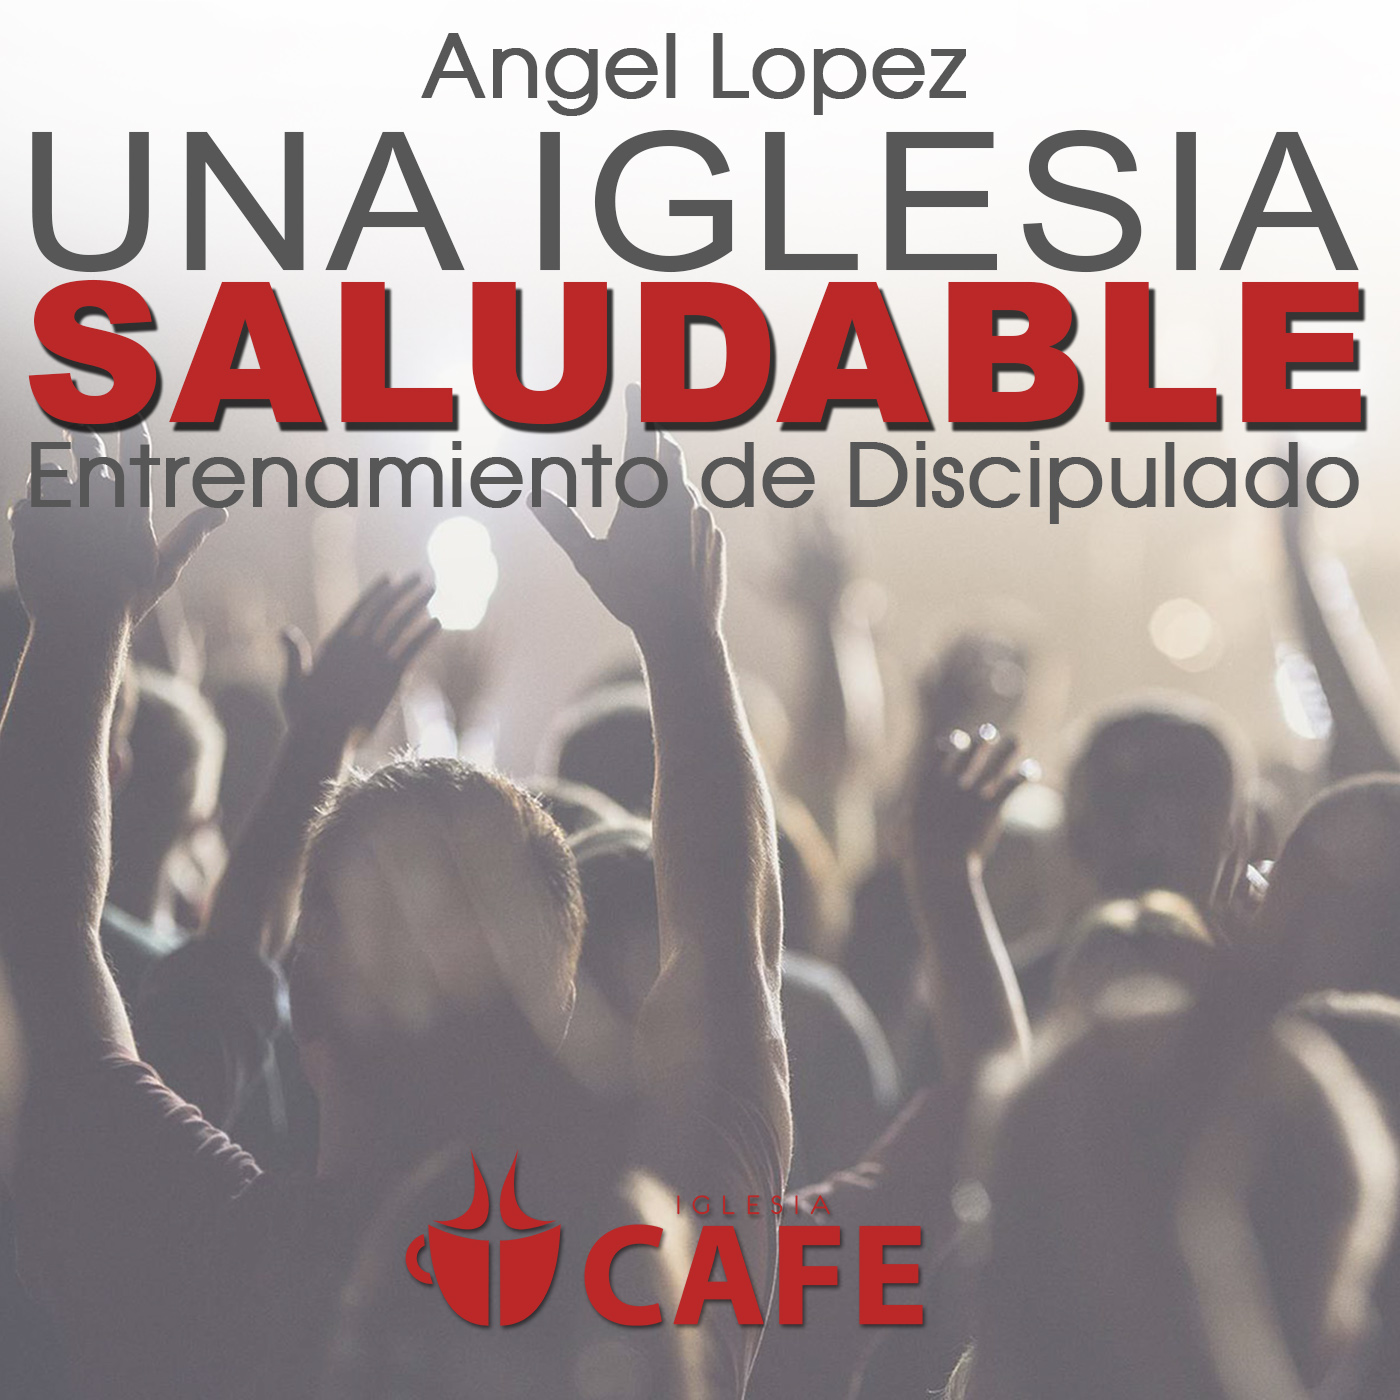 3) Angel Lopez- La Importancia de los Dones y Talentos